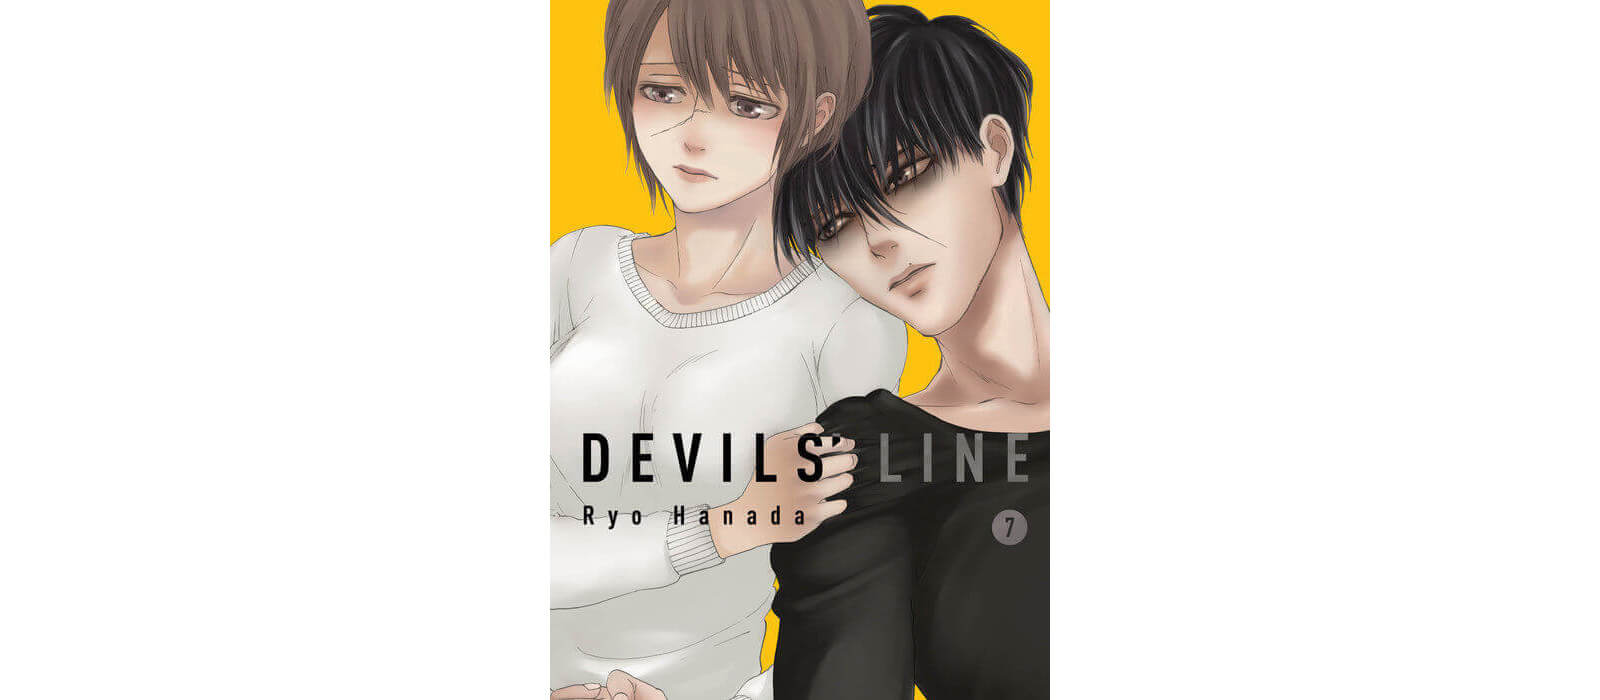 June 2017 Manga Releases - Devils Line 7 volume 1